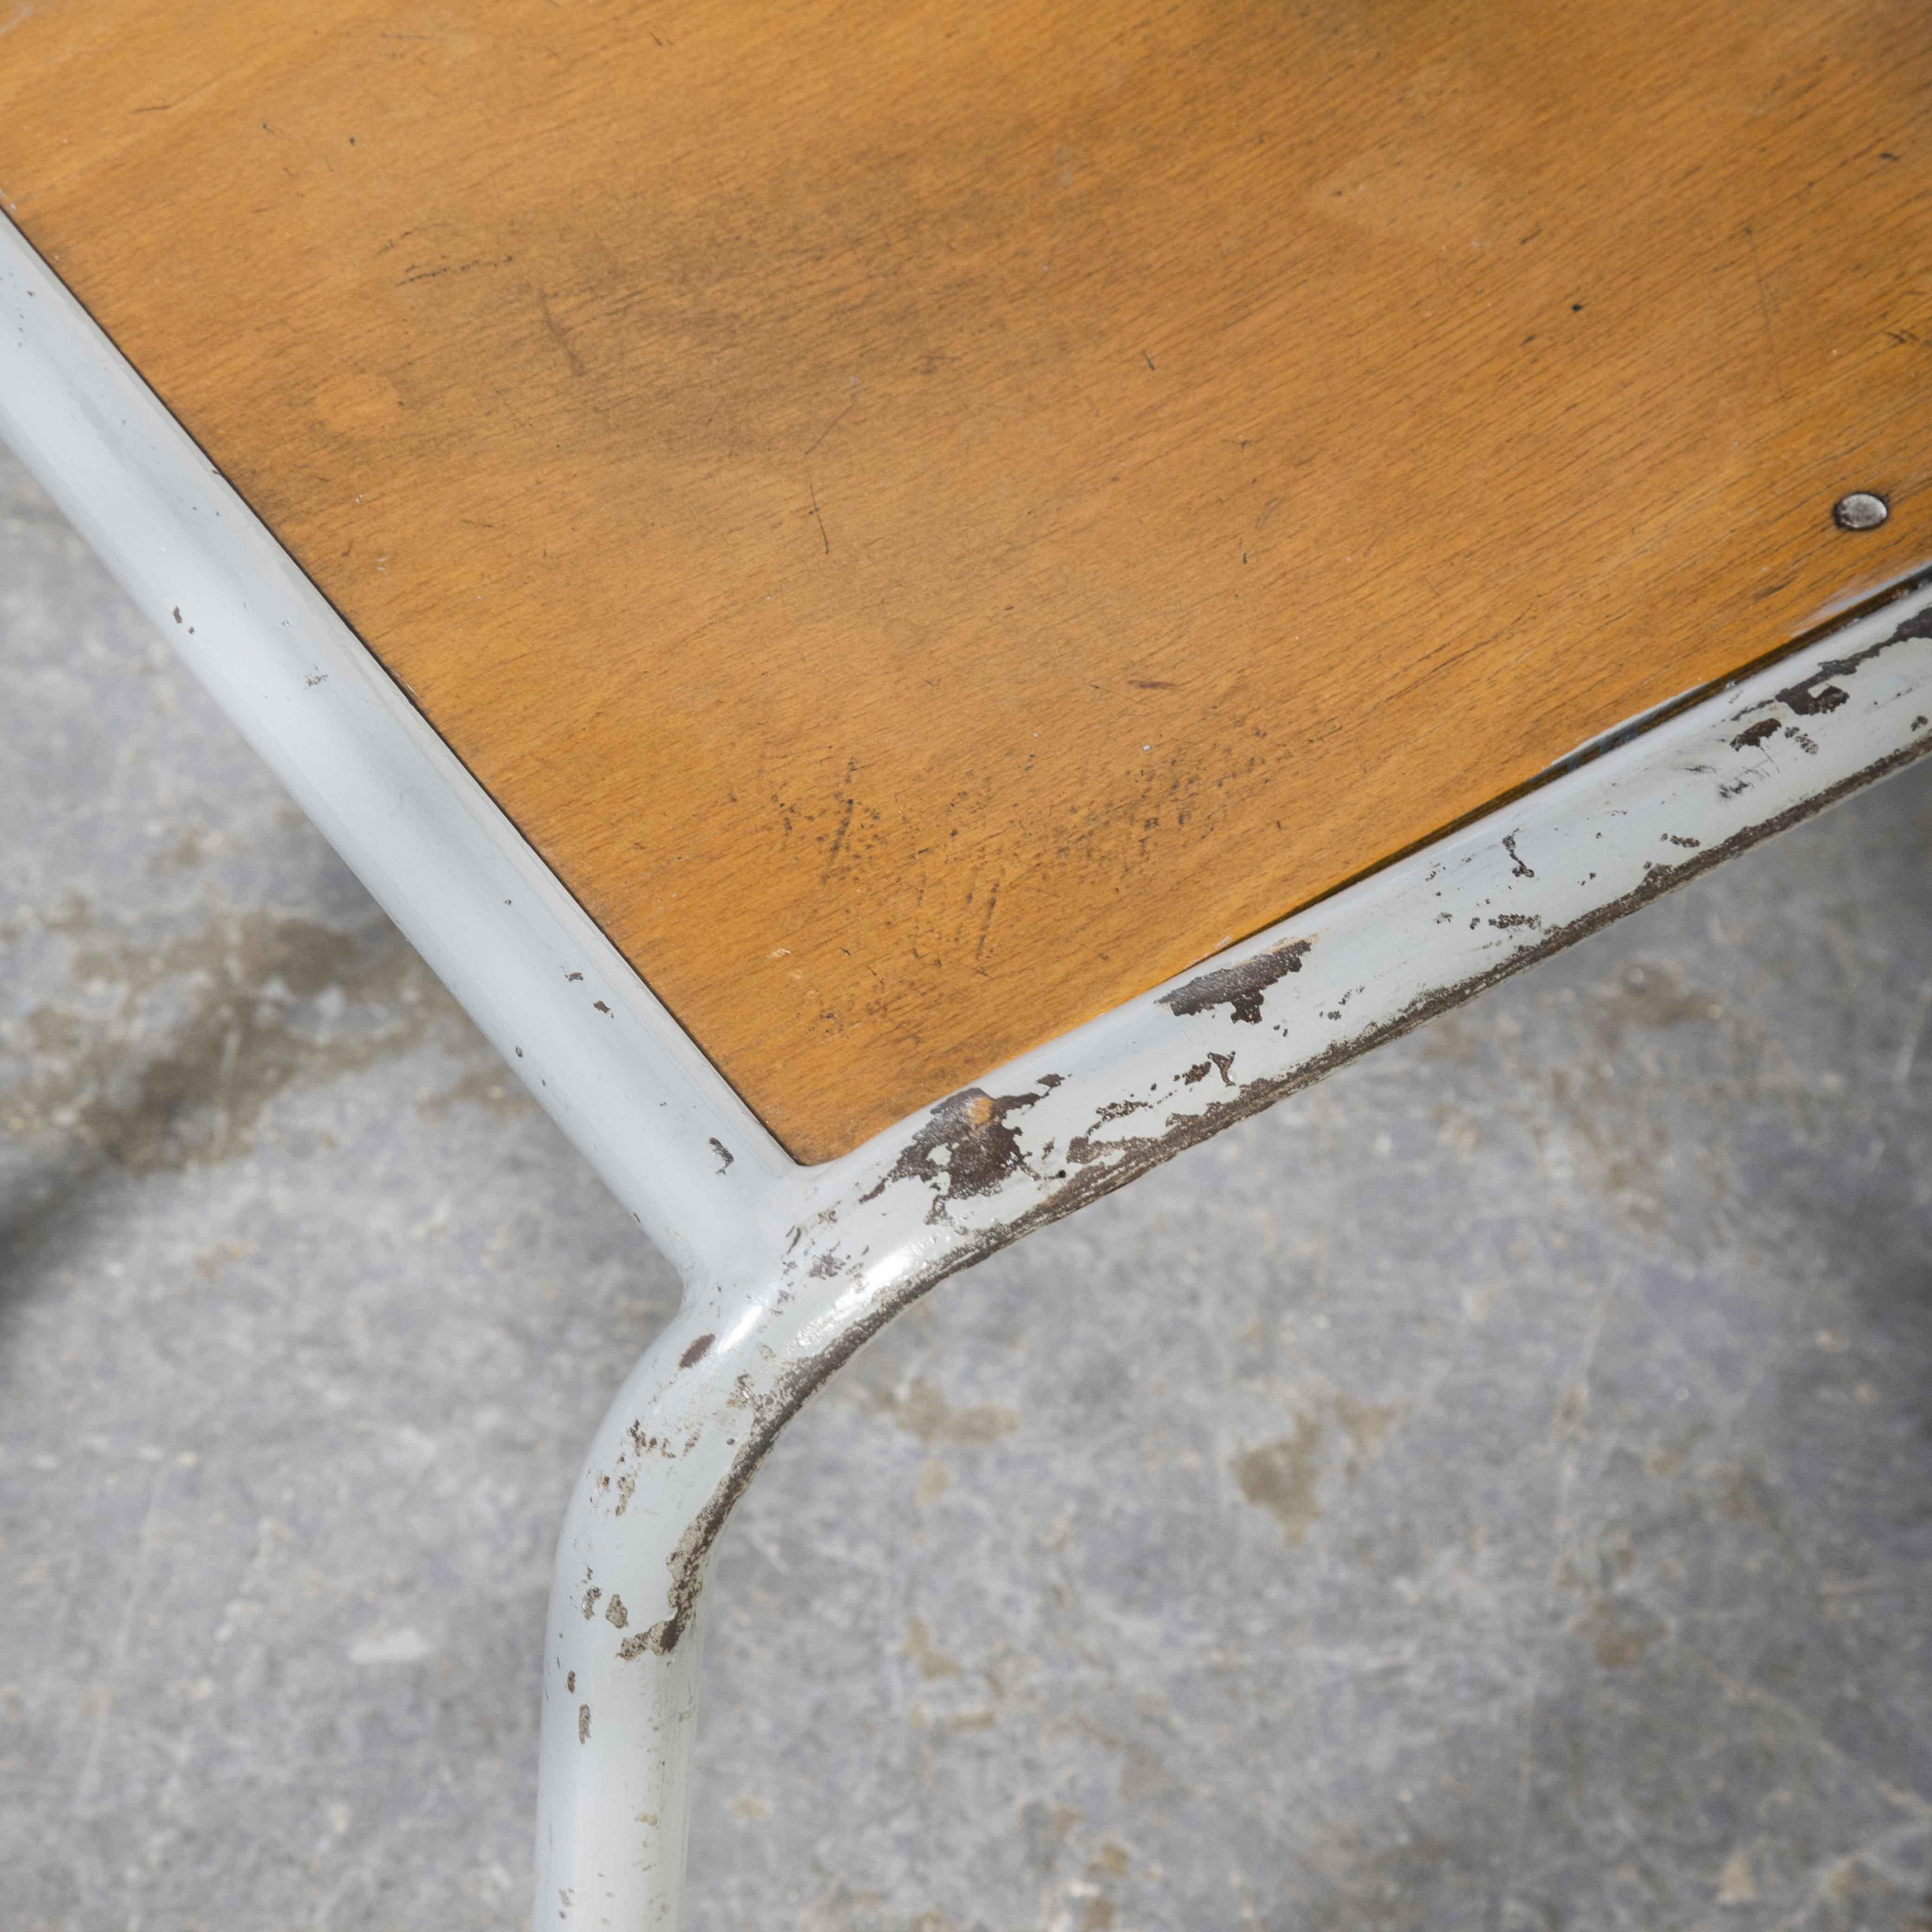 1950's French Mullca Stapel-Esszimmerstühle grau mit Holzsitz - Satz von sechs

1950's French Mullca Stapel-Esszimmerstühle grau mit Holzsitz - Satz von sechs. Robert Muller und Gaston Cavaillon, einer unserer beliebtesten Hersteller, gründeten 1947